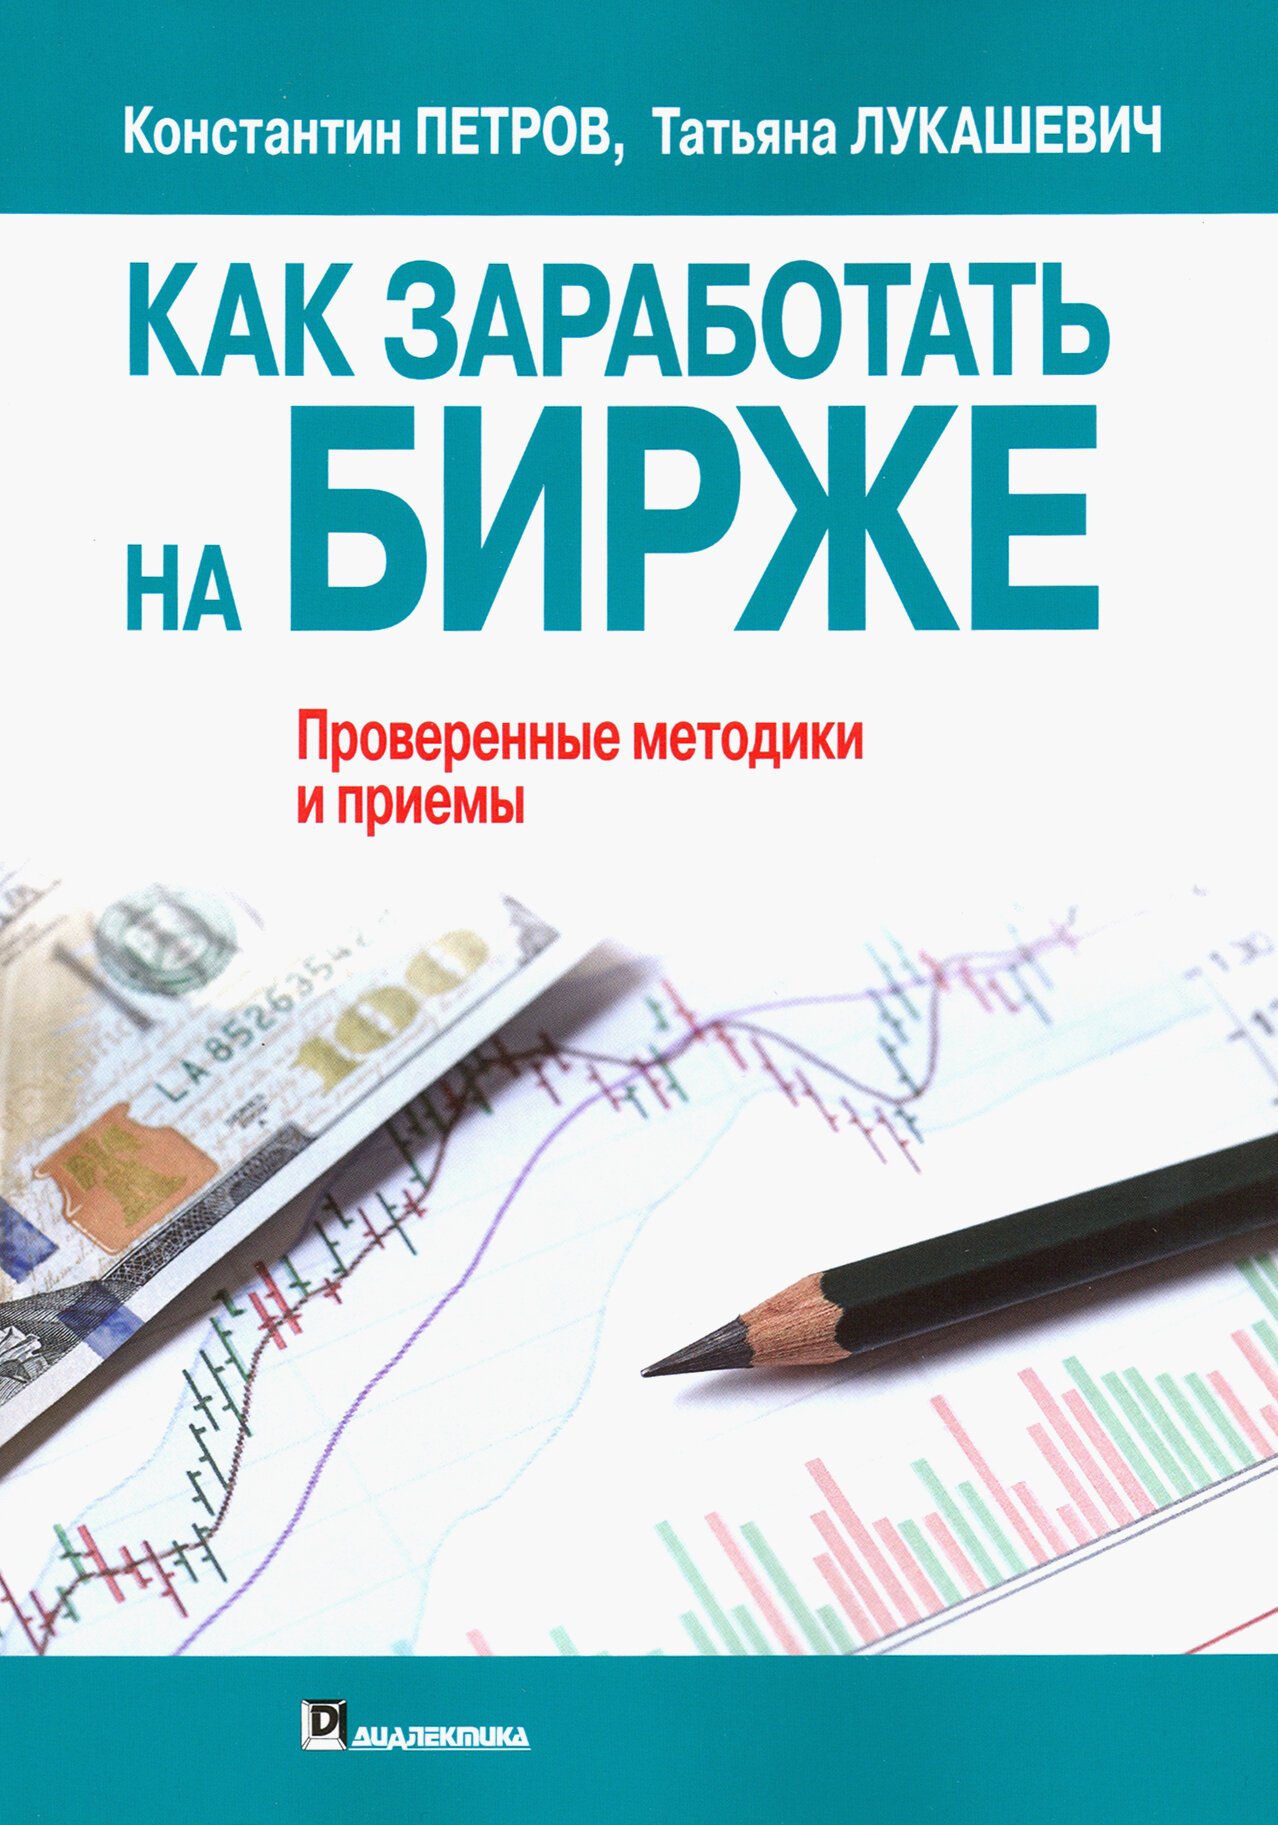 Как заработать на бирже (Лукашевич Татьяна (соавтор), Петров Константин Николаевич) - фото №3